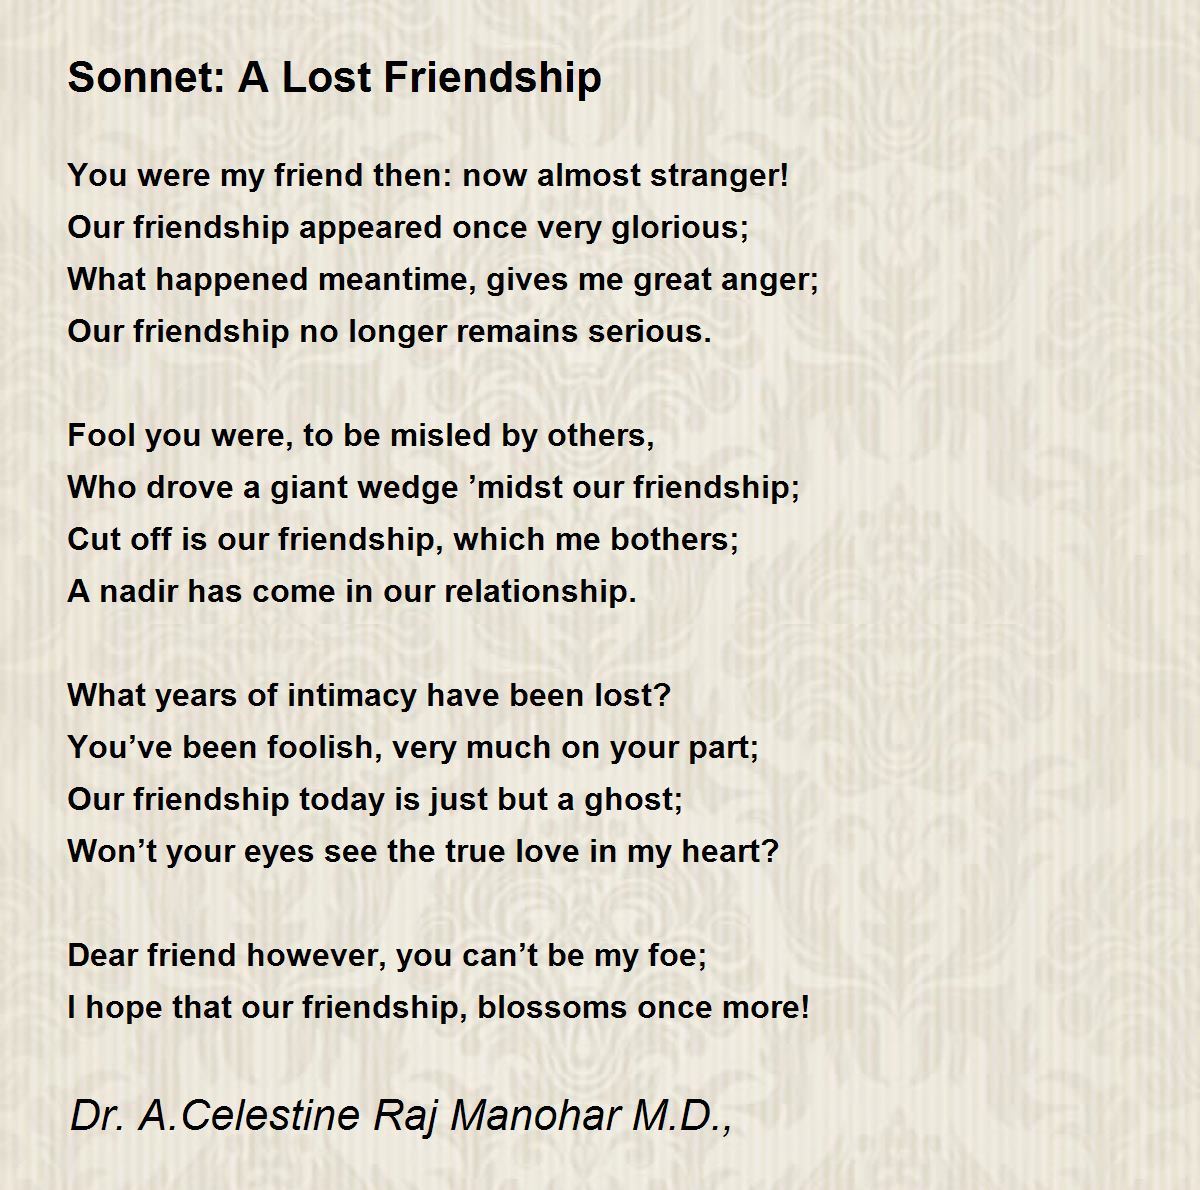 Sonnet: A Lost Friendship Poem by Dr. A.Celestine Raj Manohar M.D